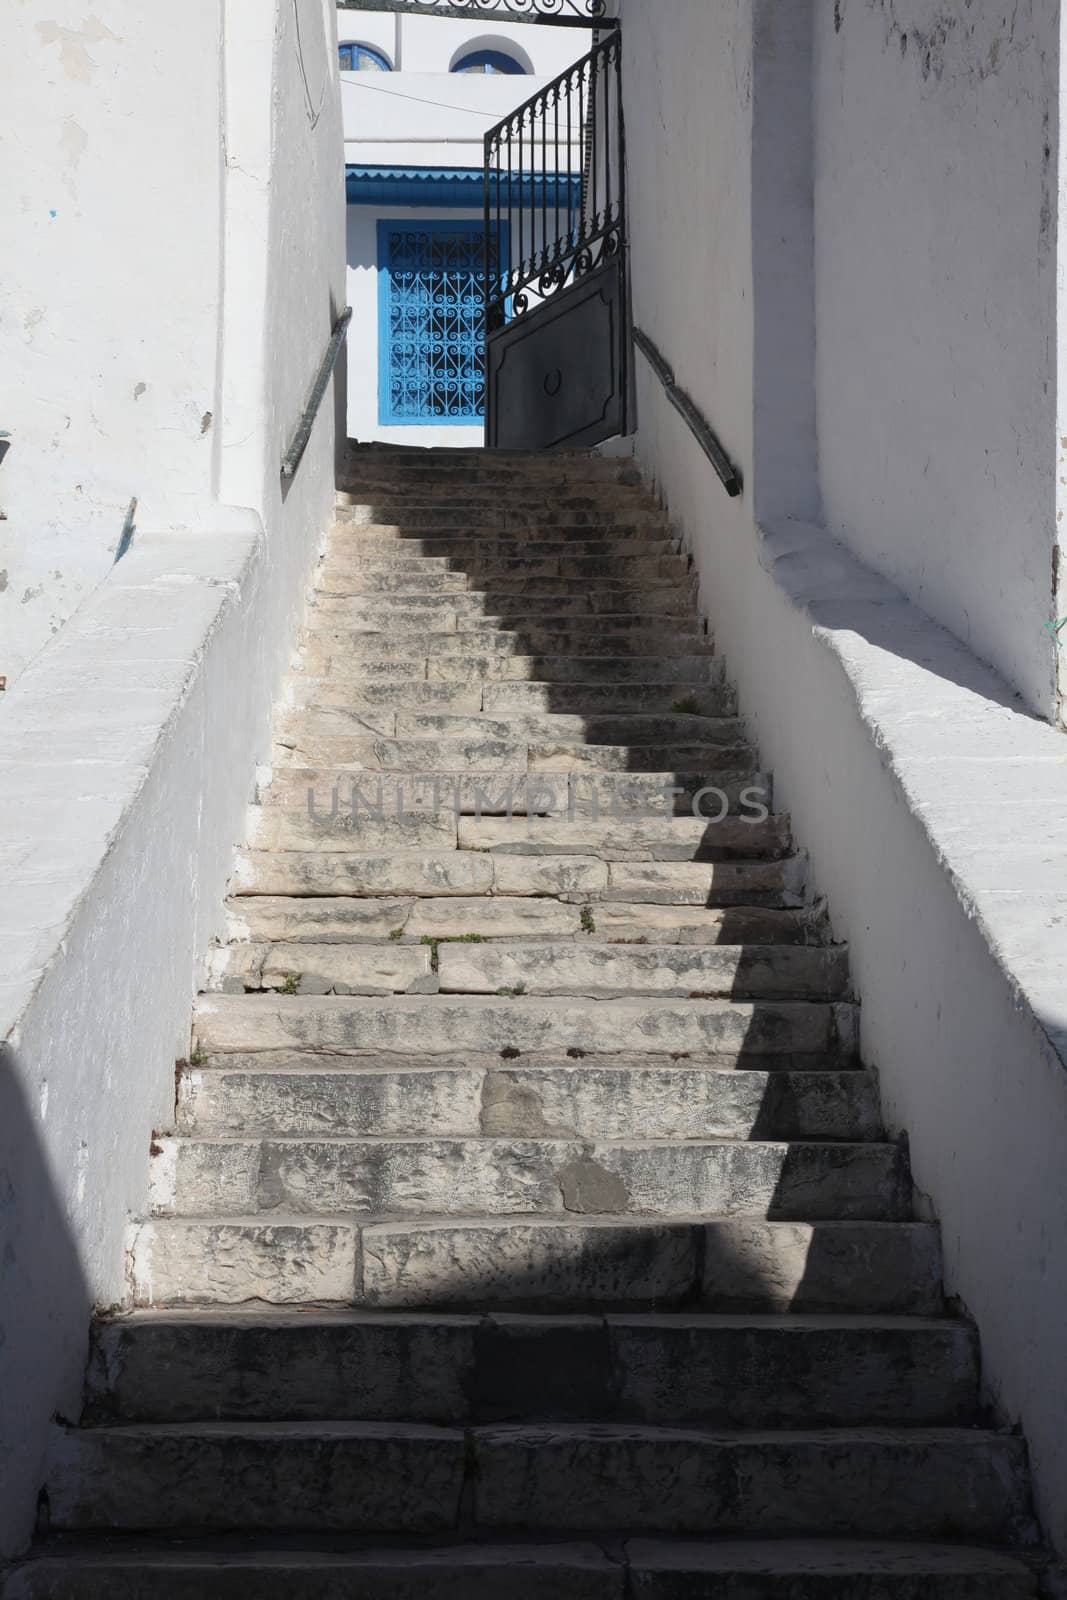 Stairway in Sidi Bou Said, Tunisia